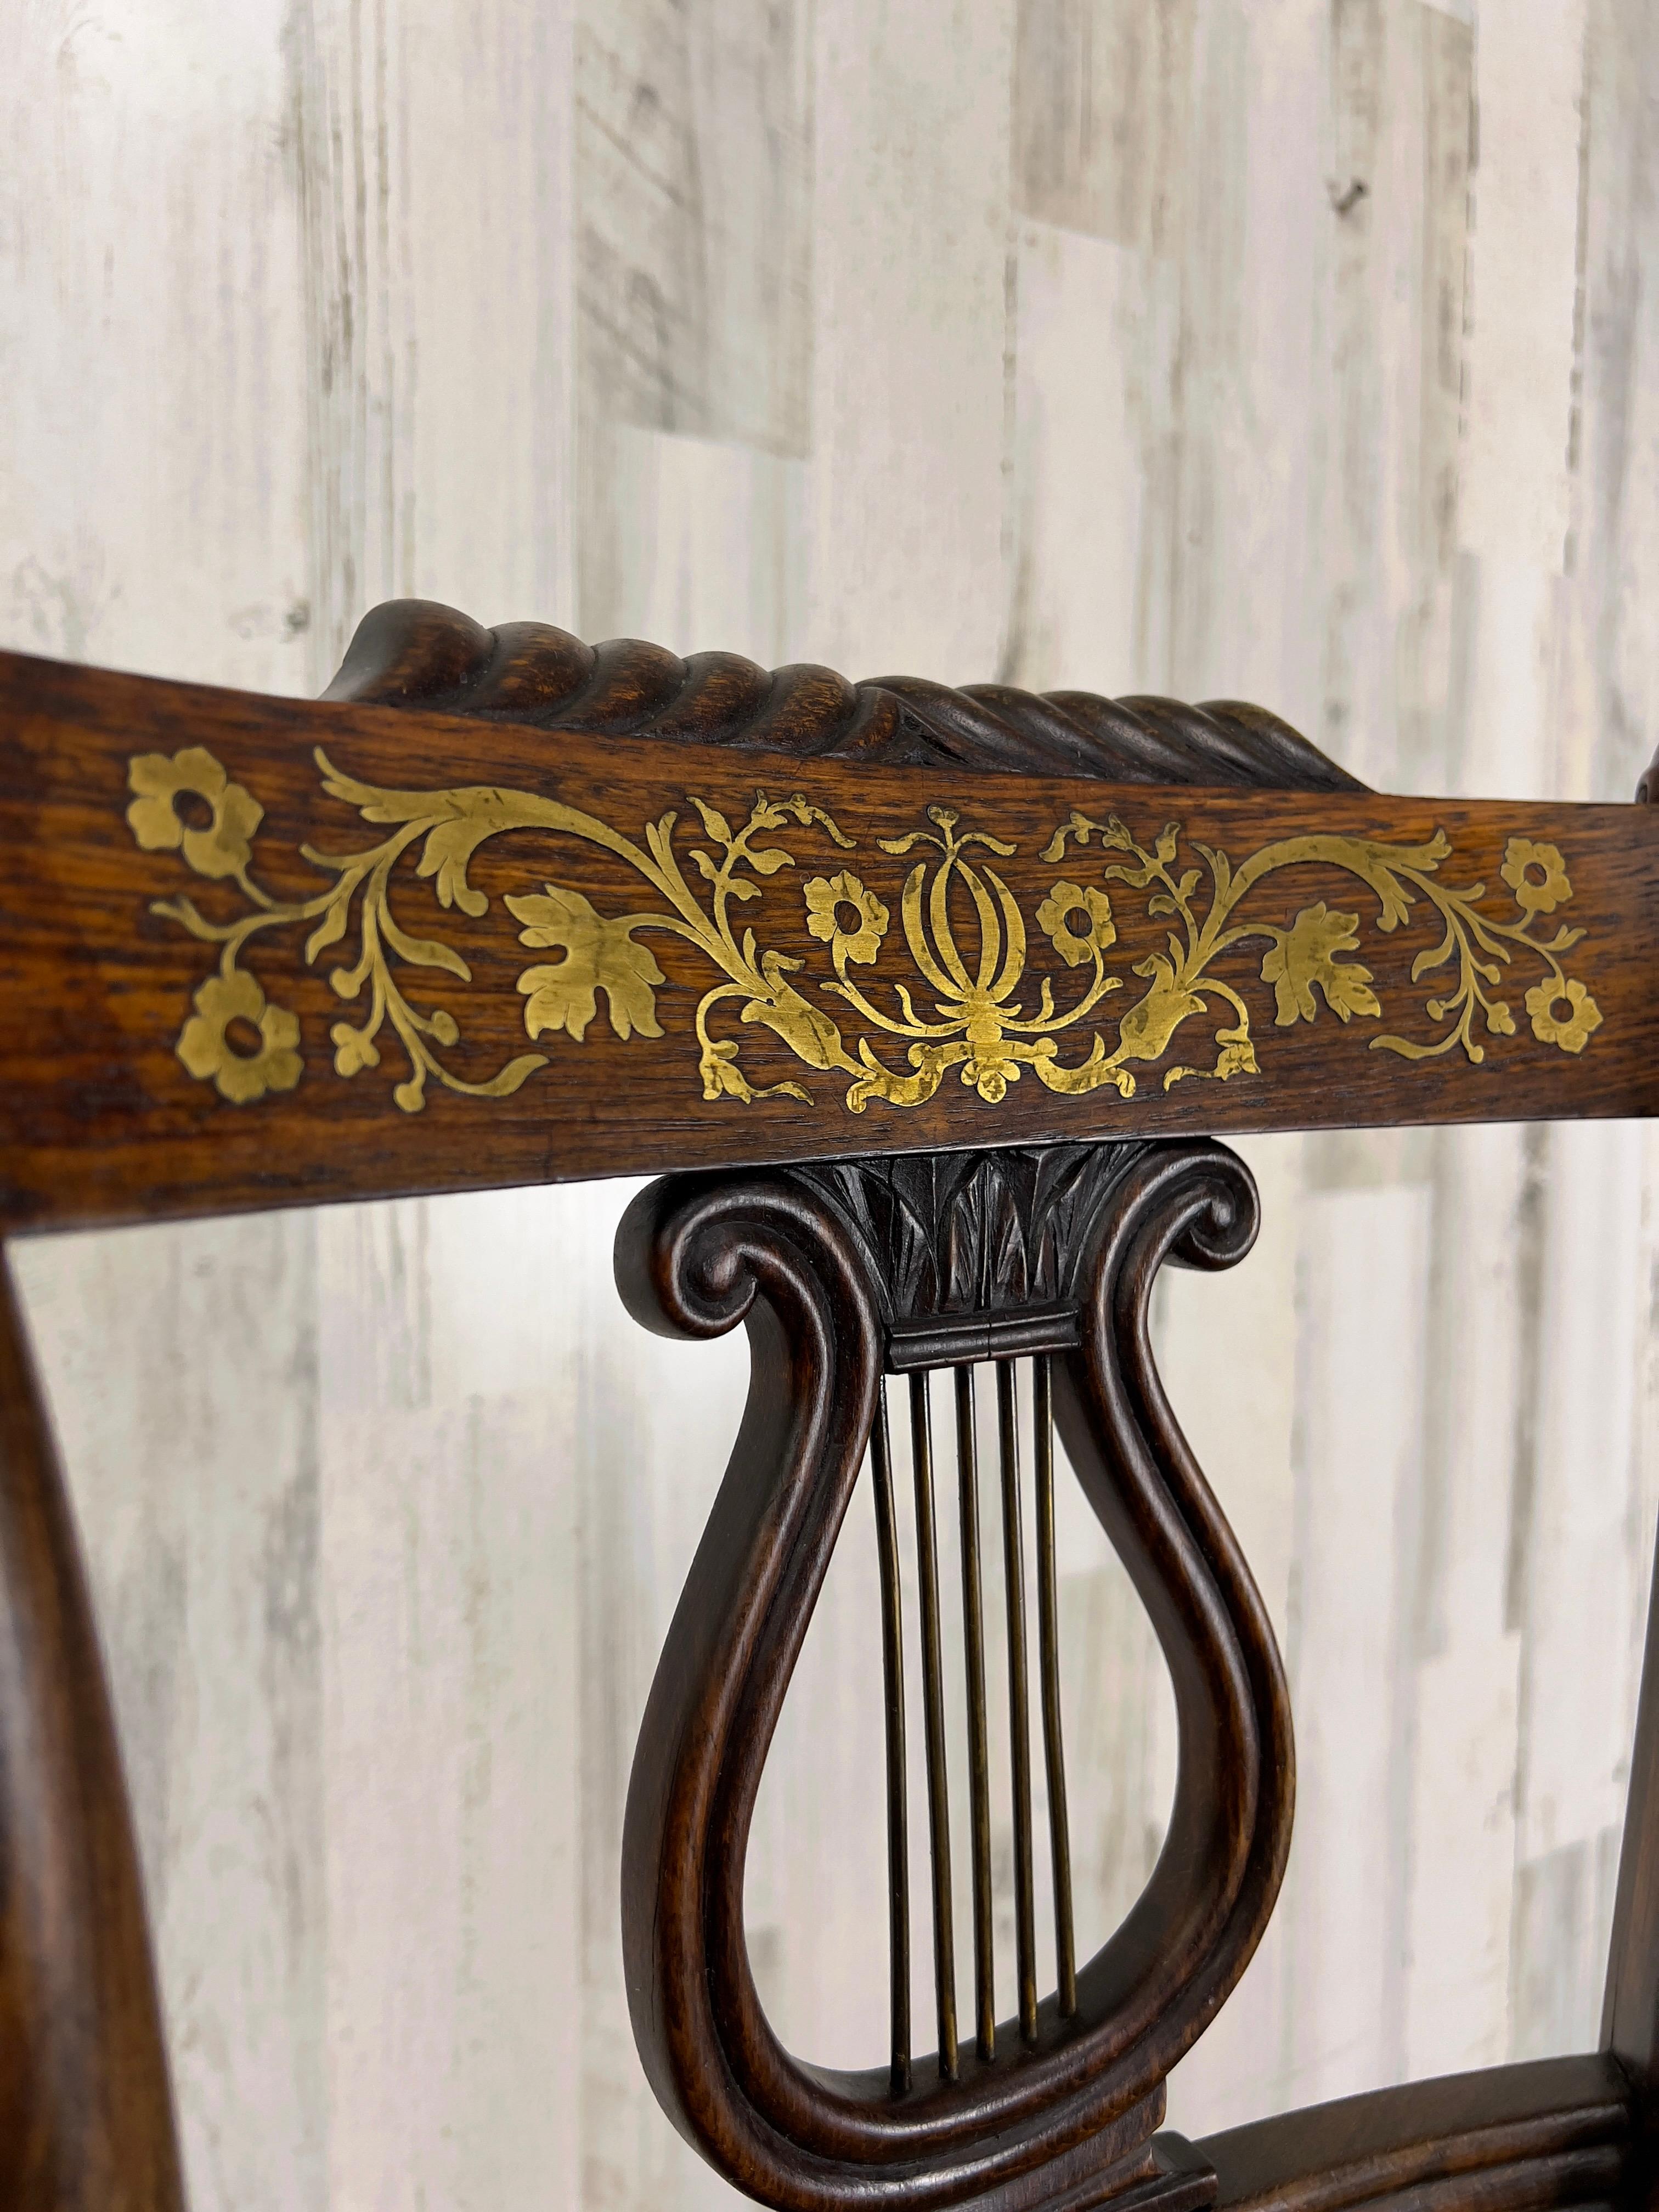 antique music chair